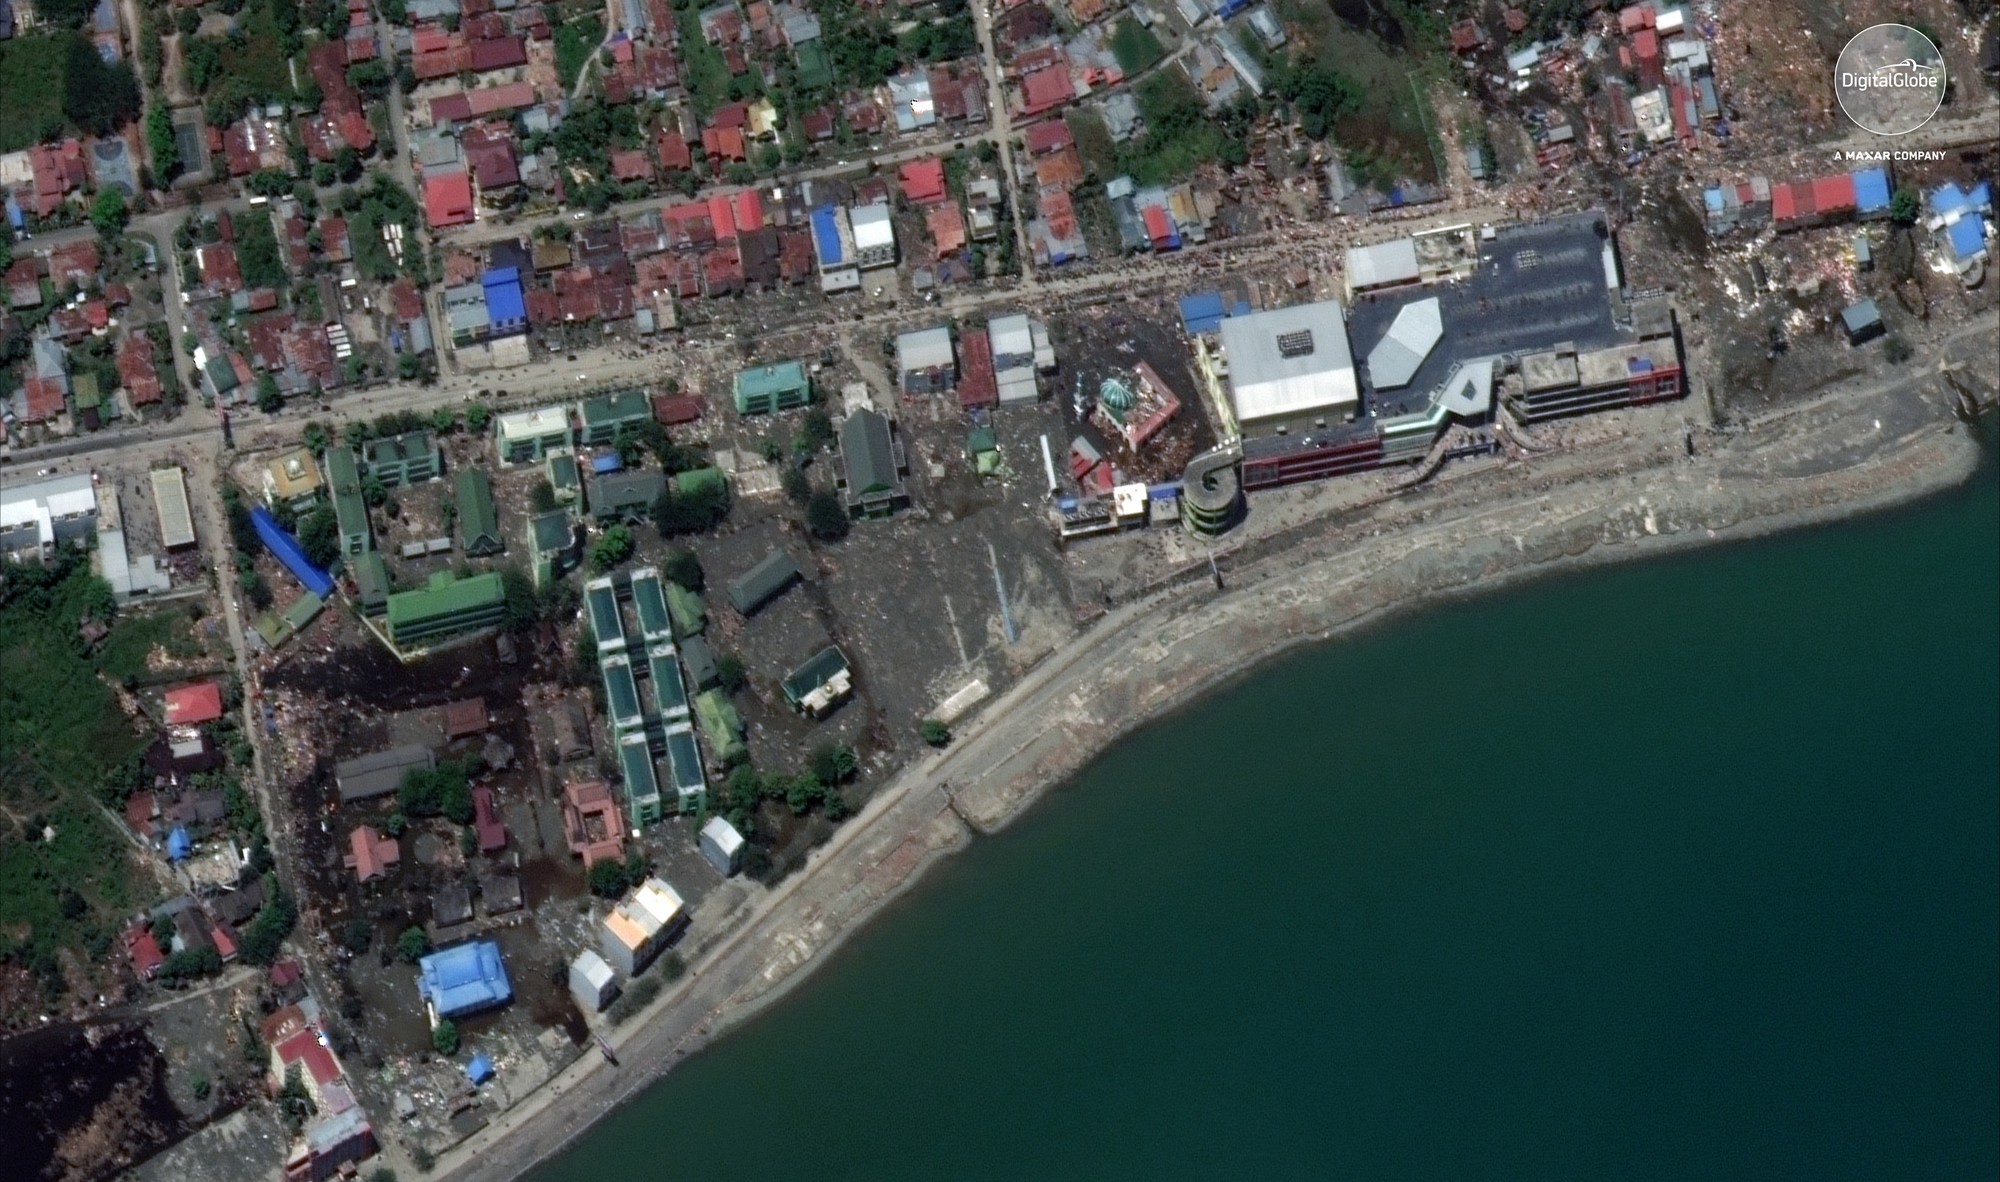 Bộ ảnh trước - sau này sẽ cho bạn thấy trận động đất khiến ít nhất 1.200 người chết ở Palu, Indonesia khủng khiếp như thế nào-5